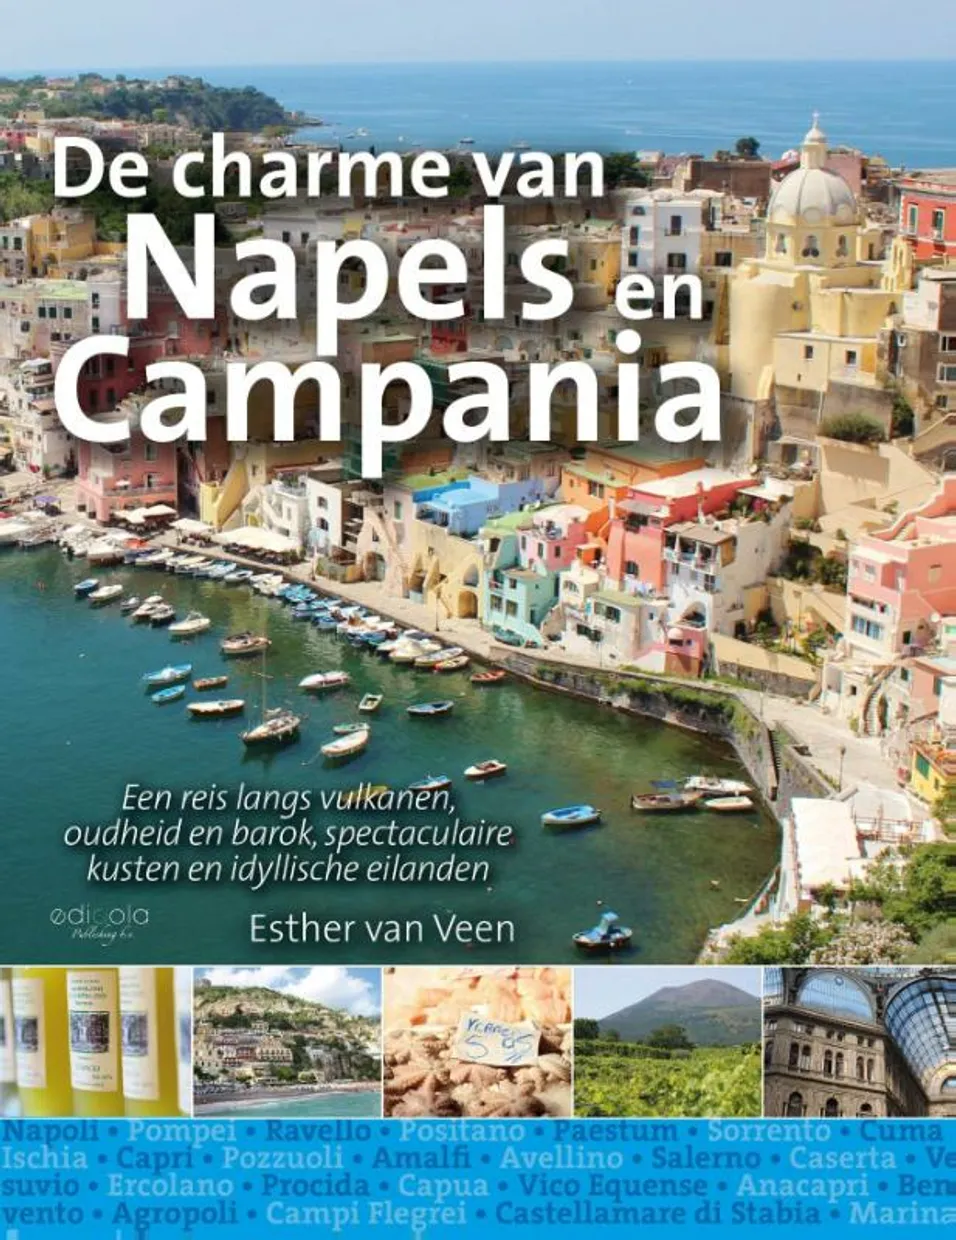 De charme van Napels en Campania